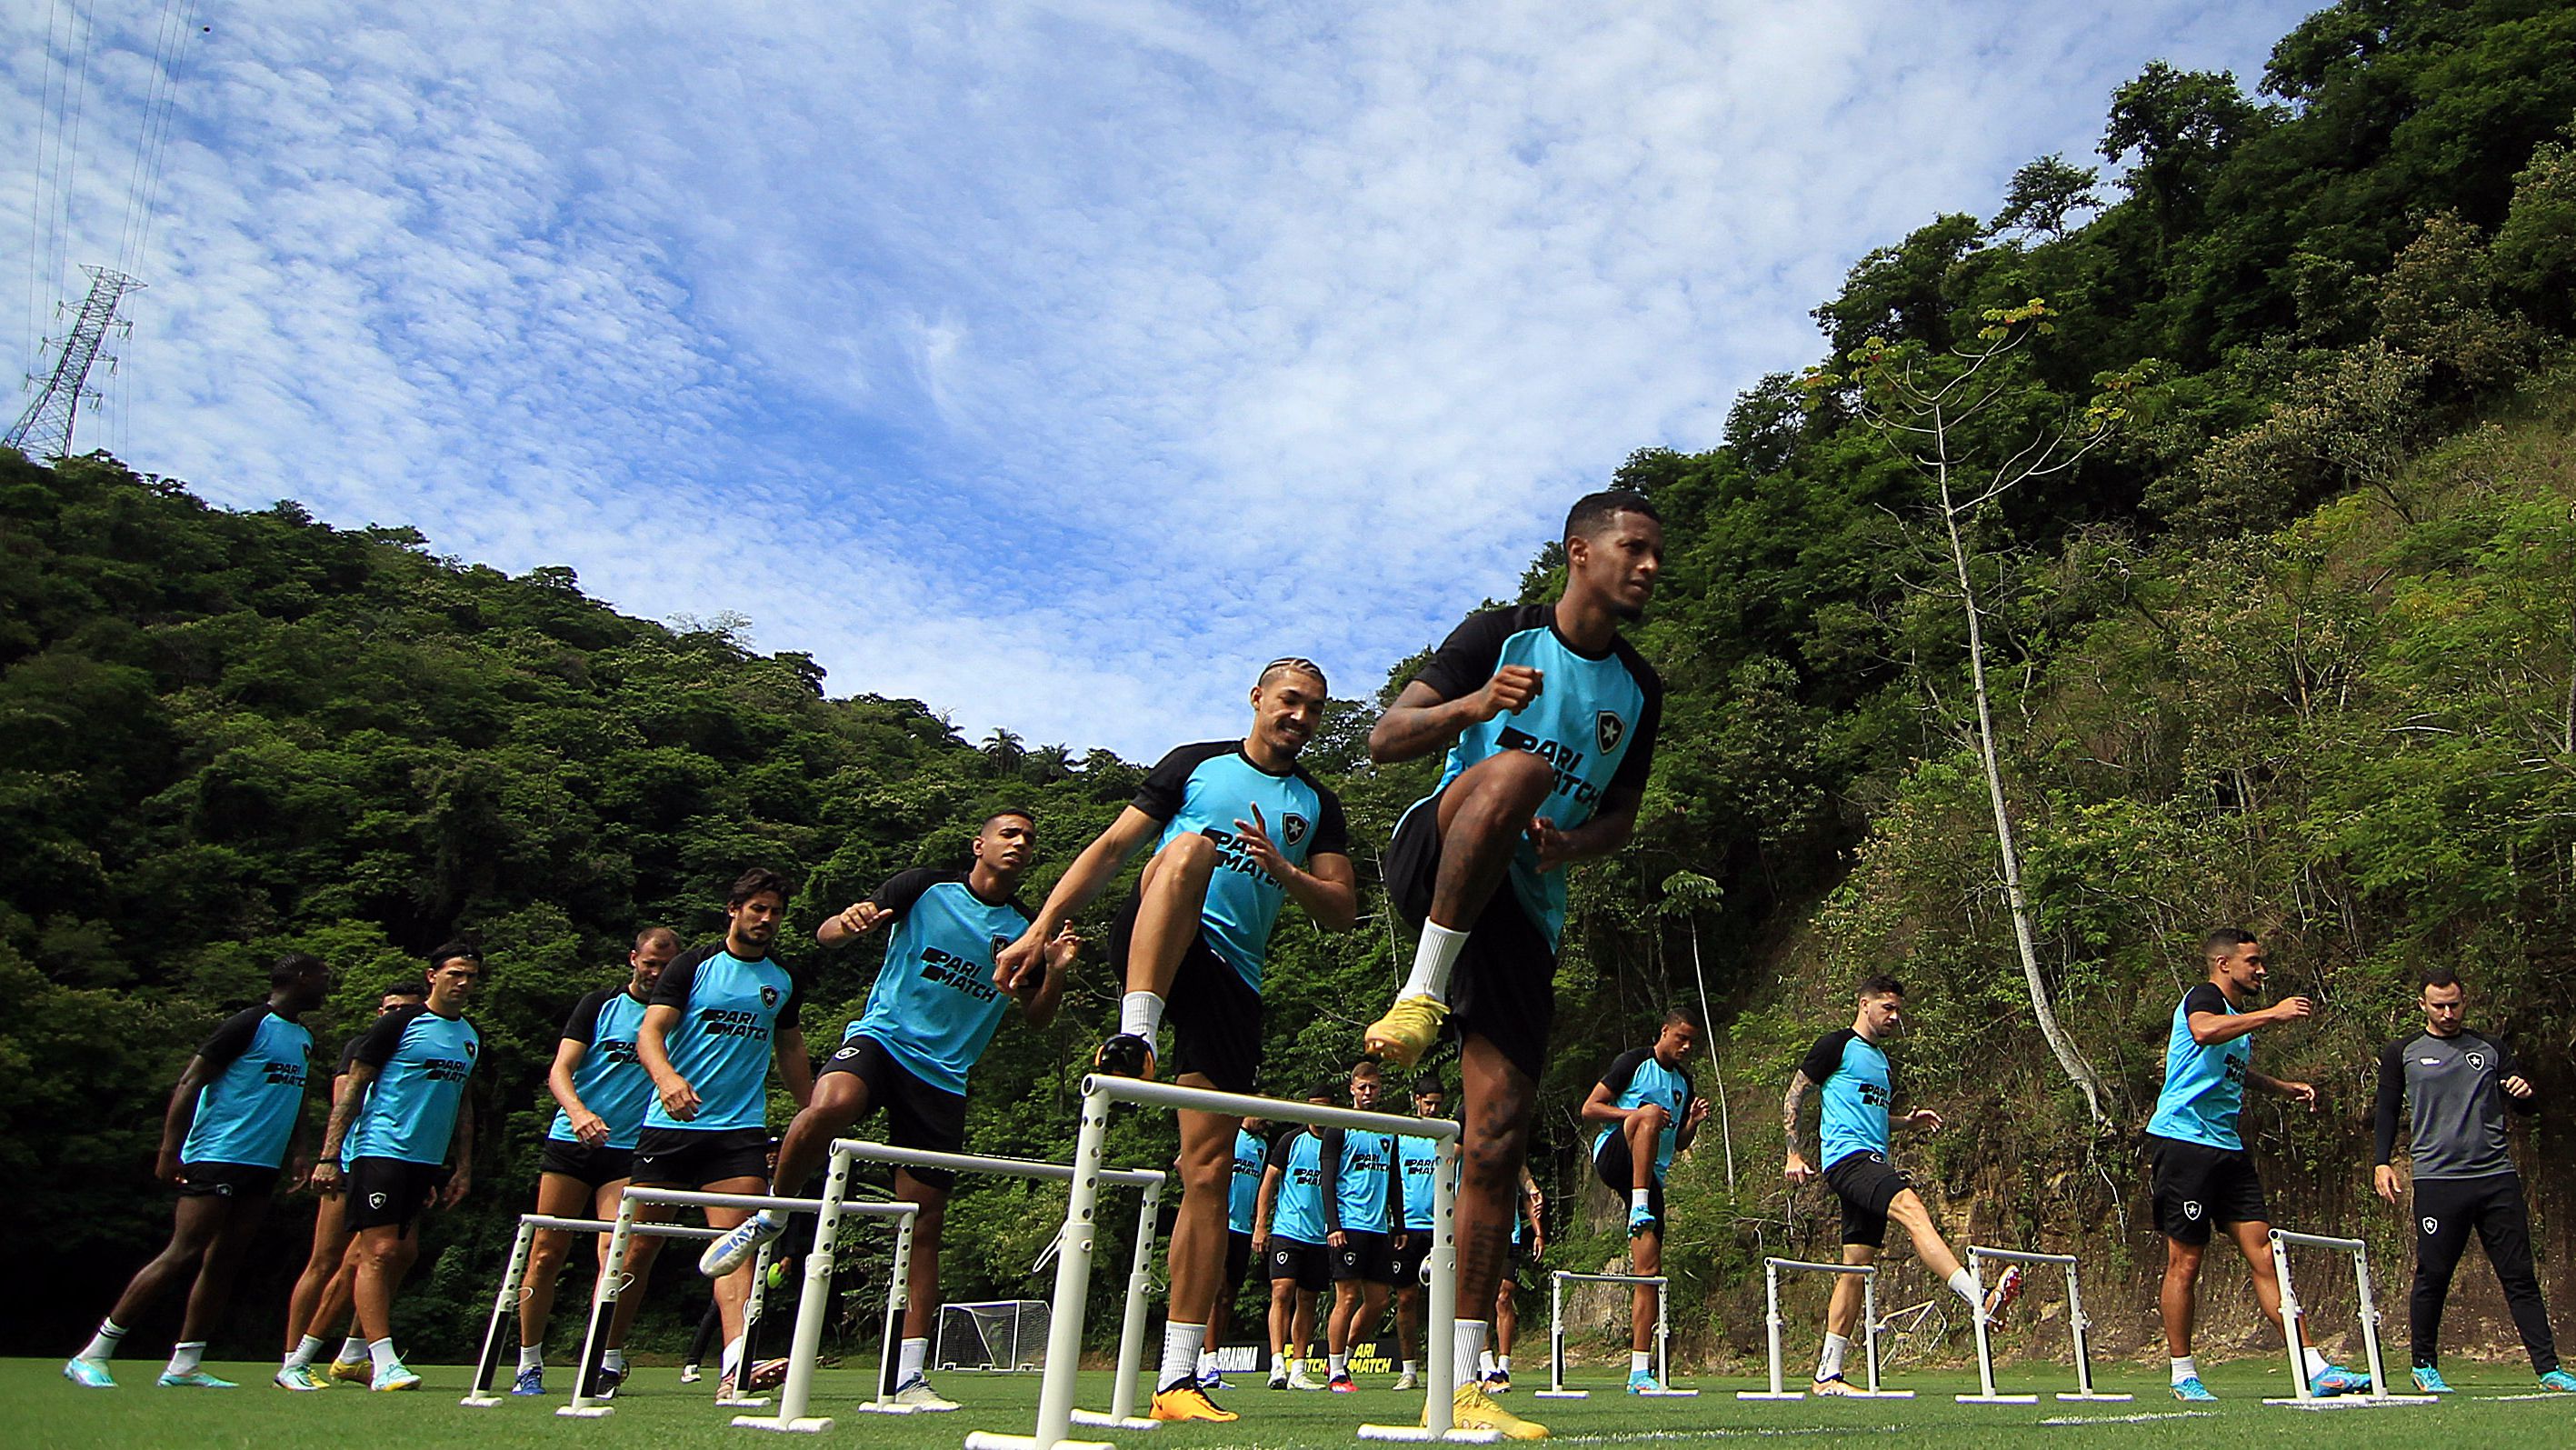 Imagens do treinamento do Botafogo (Crédito: Vítor Silva / Botafogo)